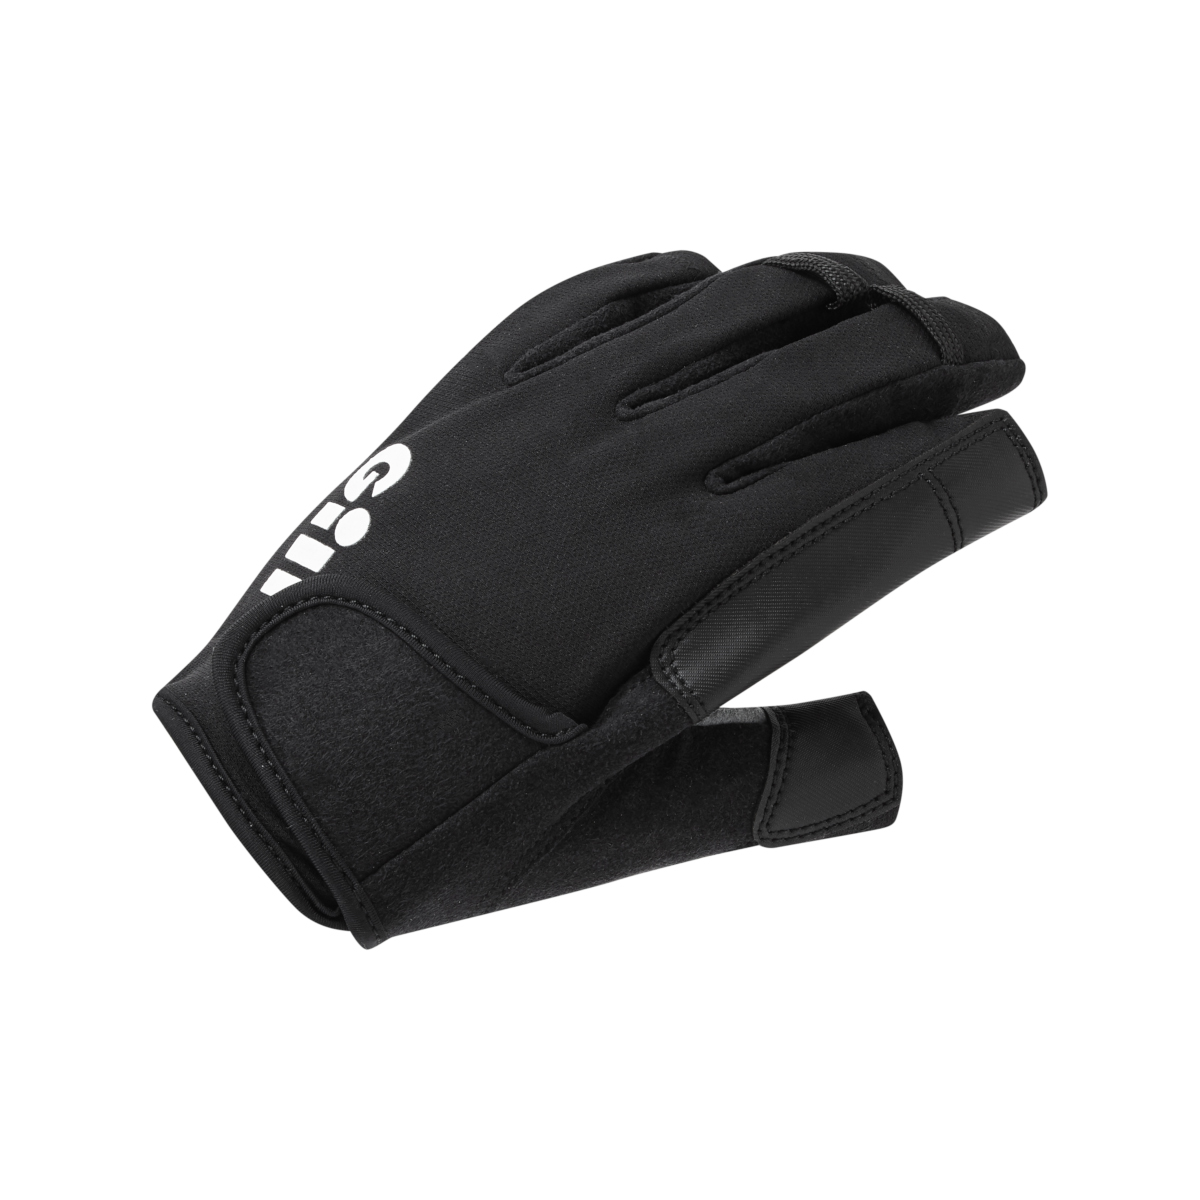 Gill Championship gants de voile à doigts courts - noir, taille XL